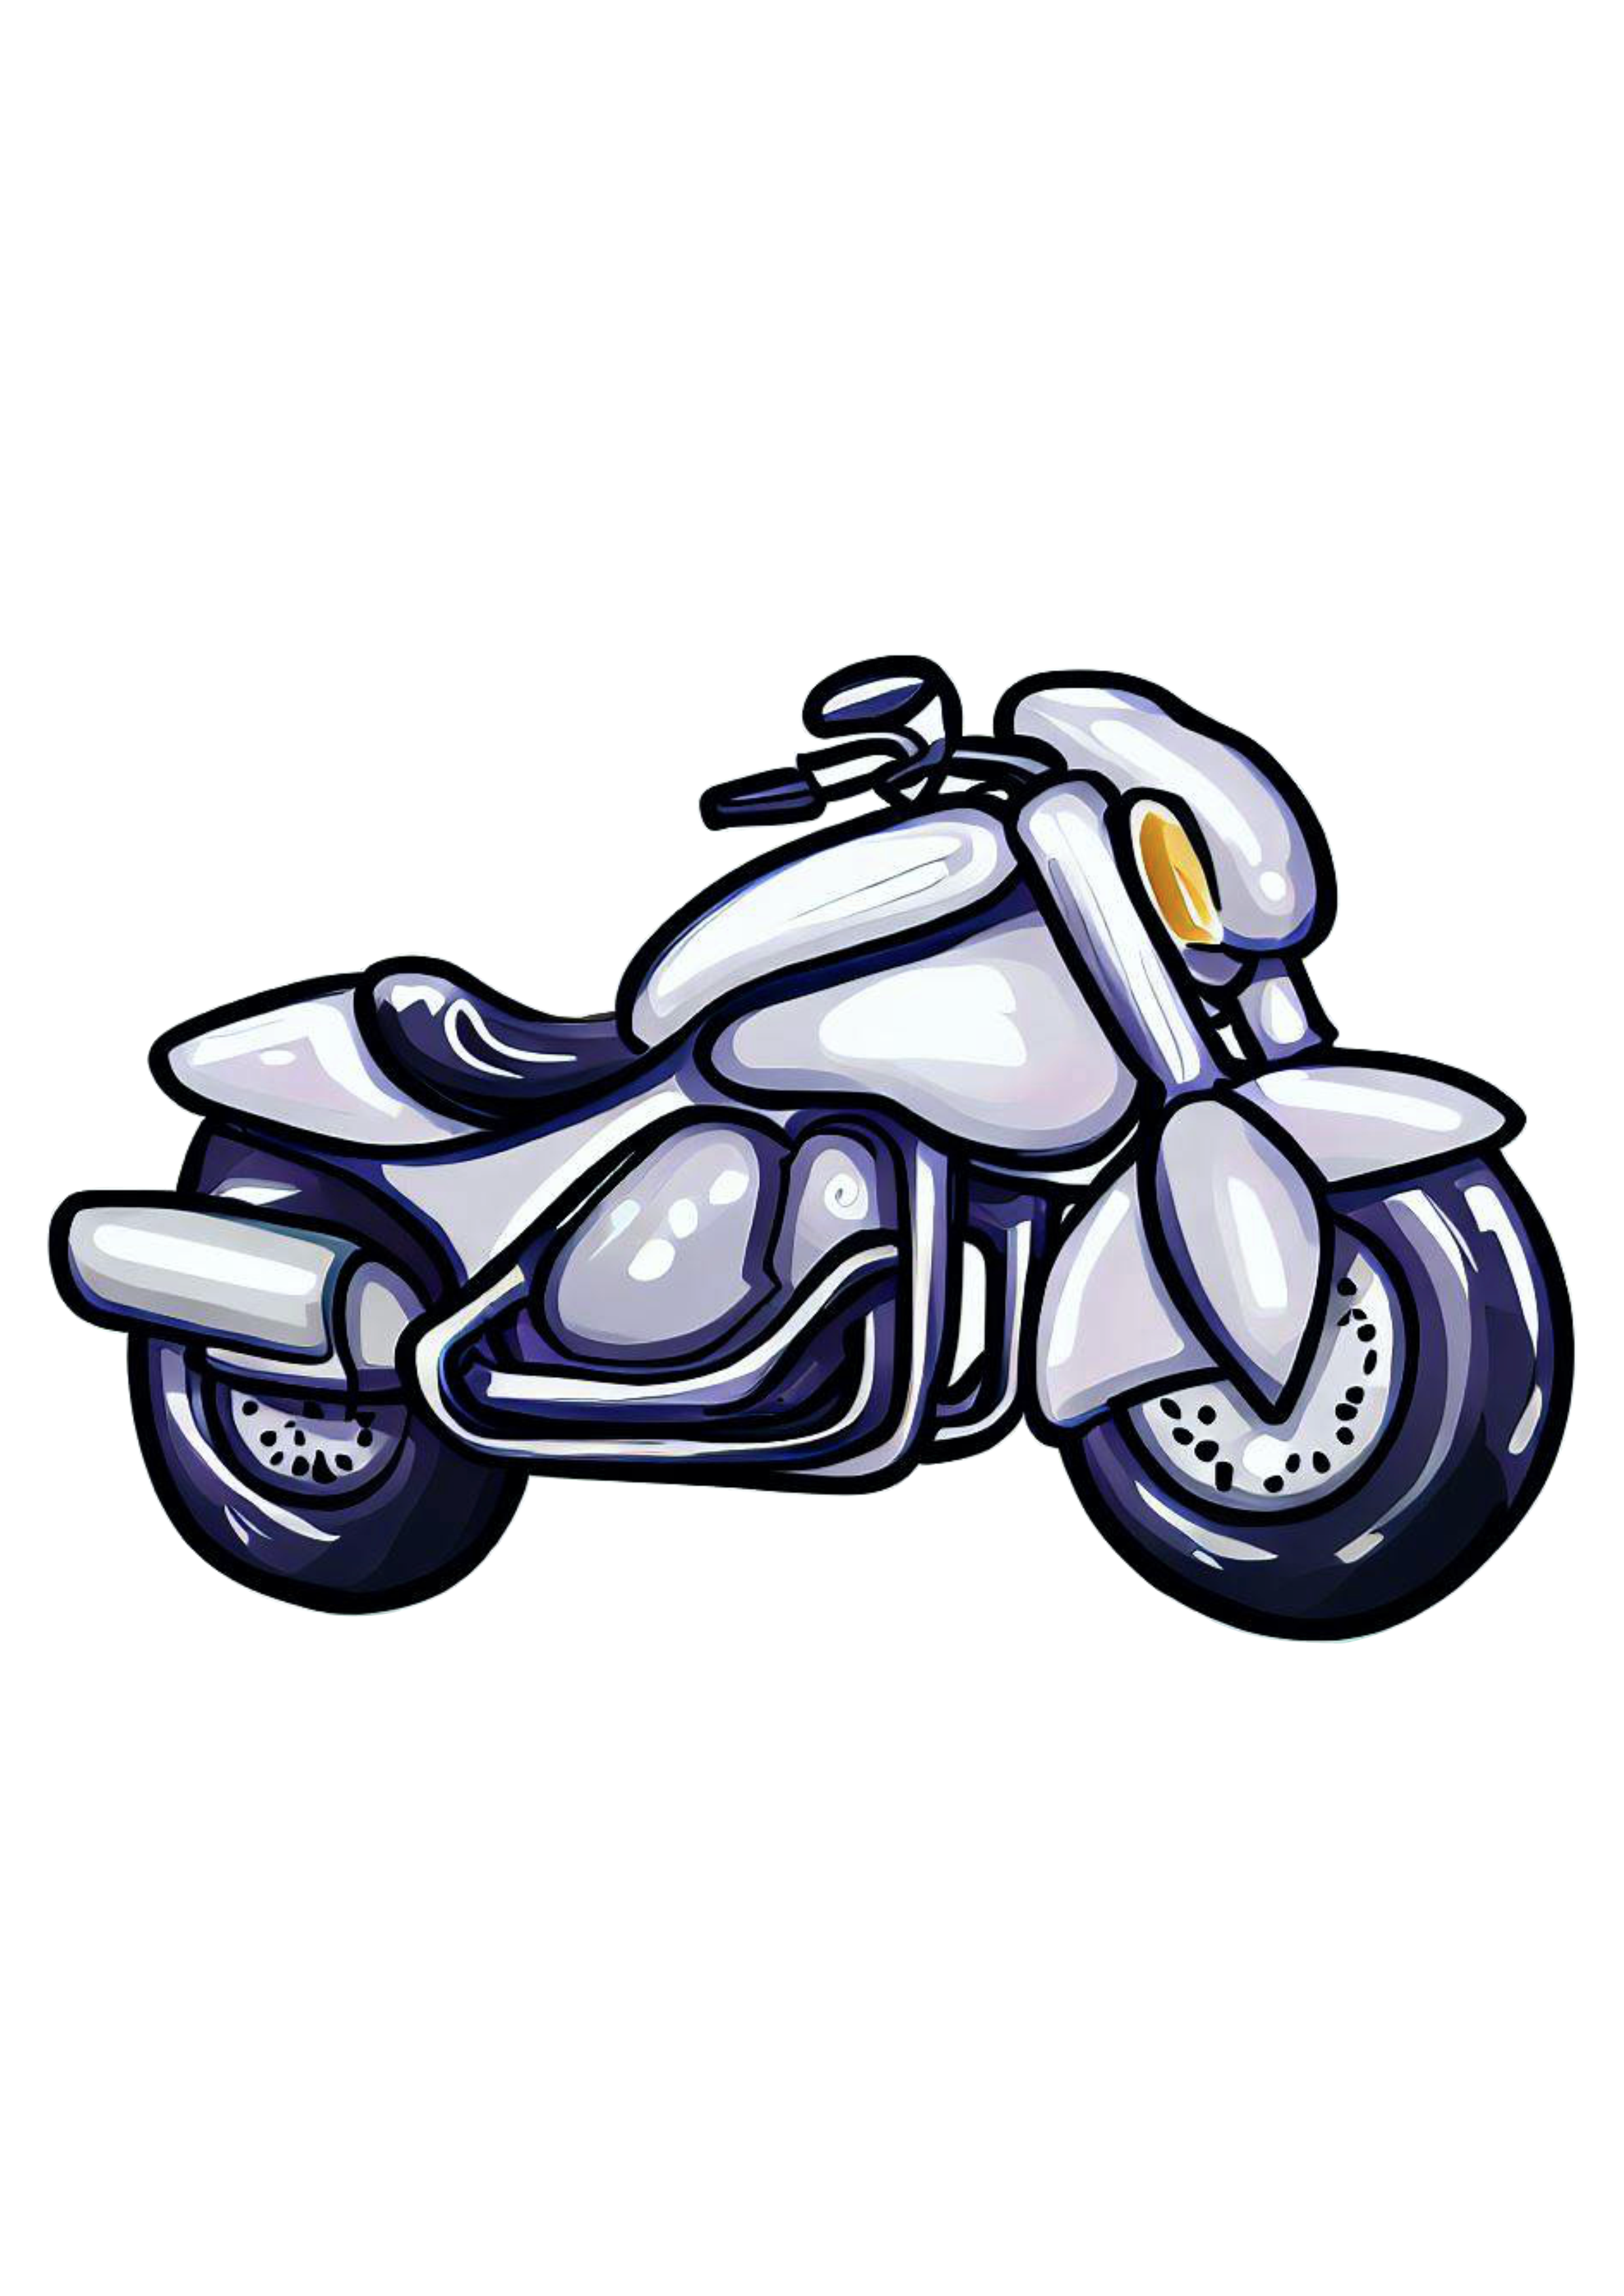 Moto esportiva desenho cartoon imagem conceitual veículo automotivo alta velocidade ilustração futurista imagem sem fundo png